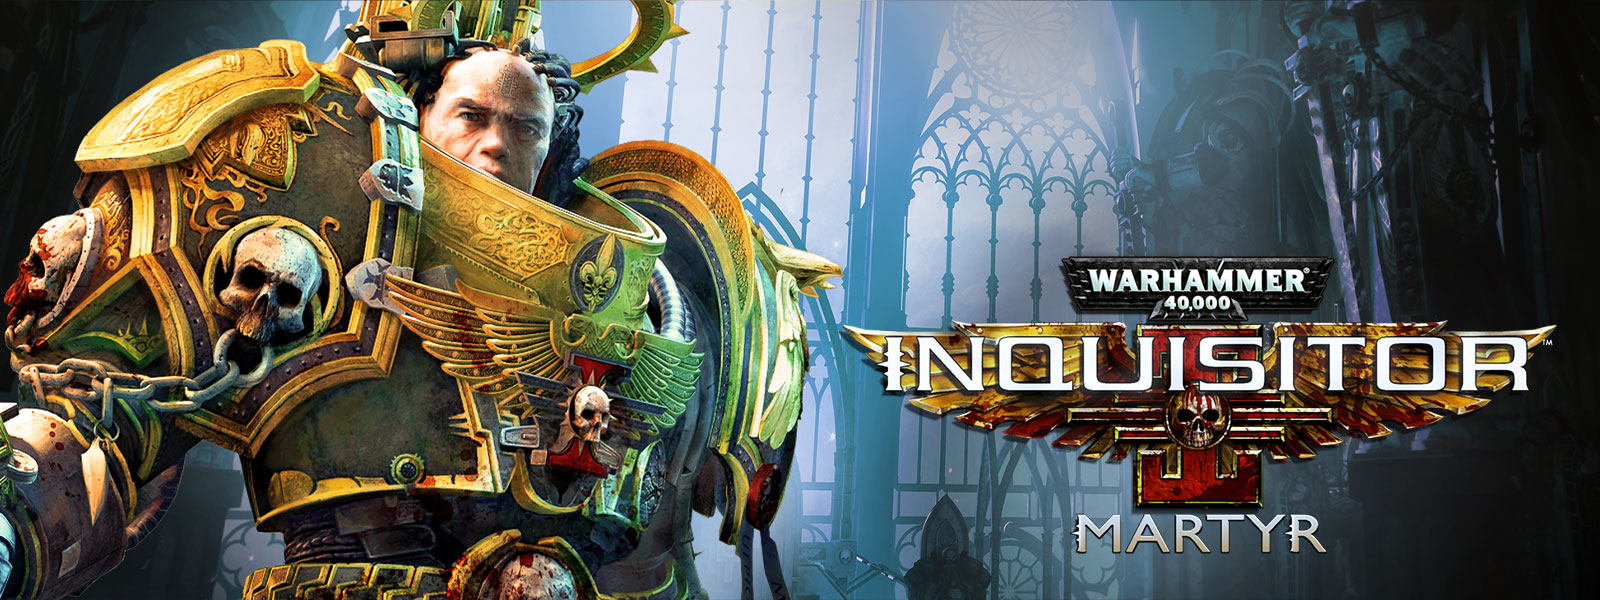 Warhammer 40,000: Inquisitor, Martyr, 인퀴지터가 화려한 대성당에 서 있습니다.